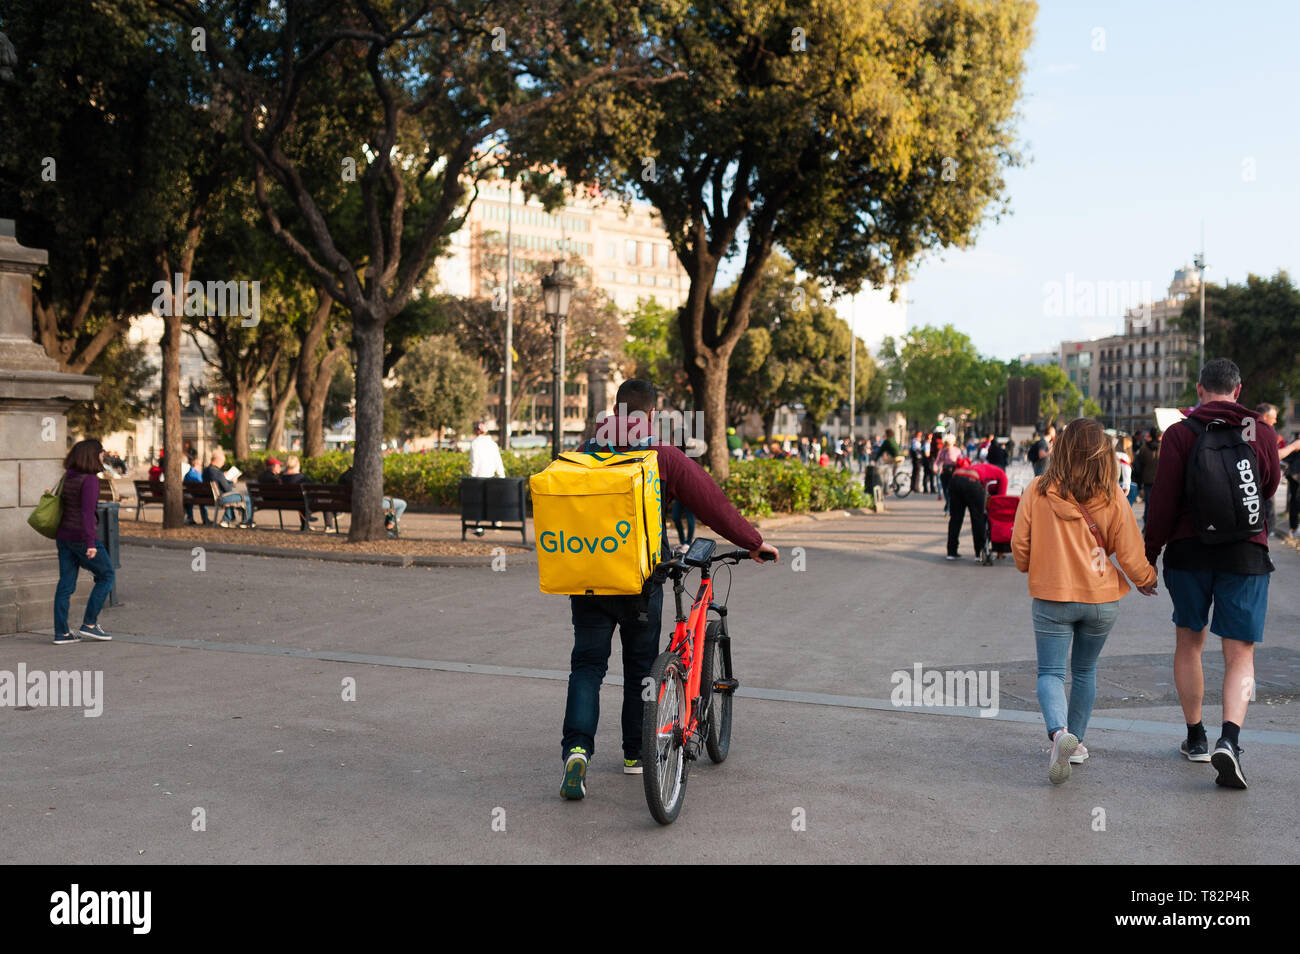 Bologne, Italie - 13 avril 2019 : jeune garçon glovo rider faire livraison sur son vélo travaillant dans la soi-disant économie concert place principale de Barcelone Banque D'Images